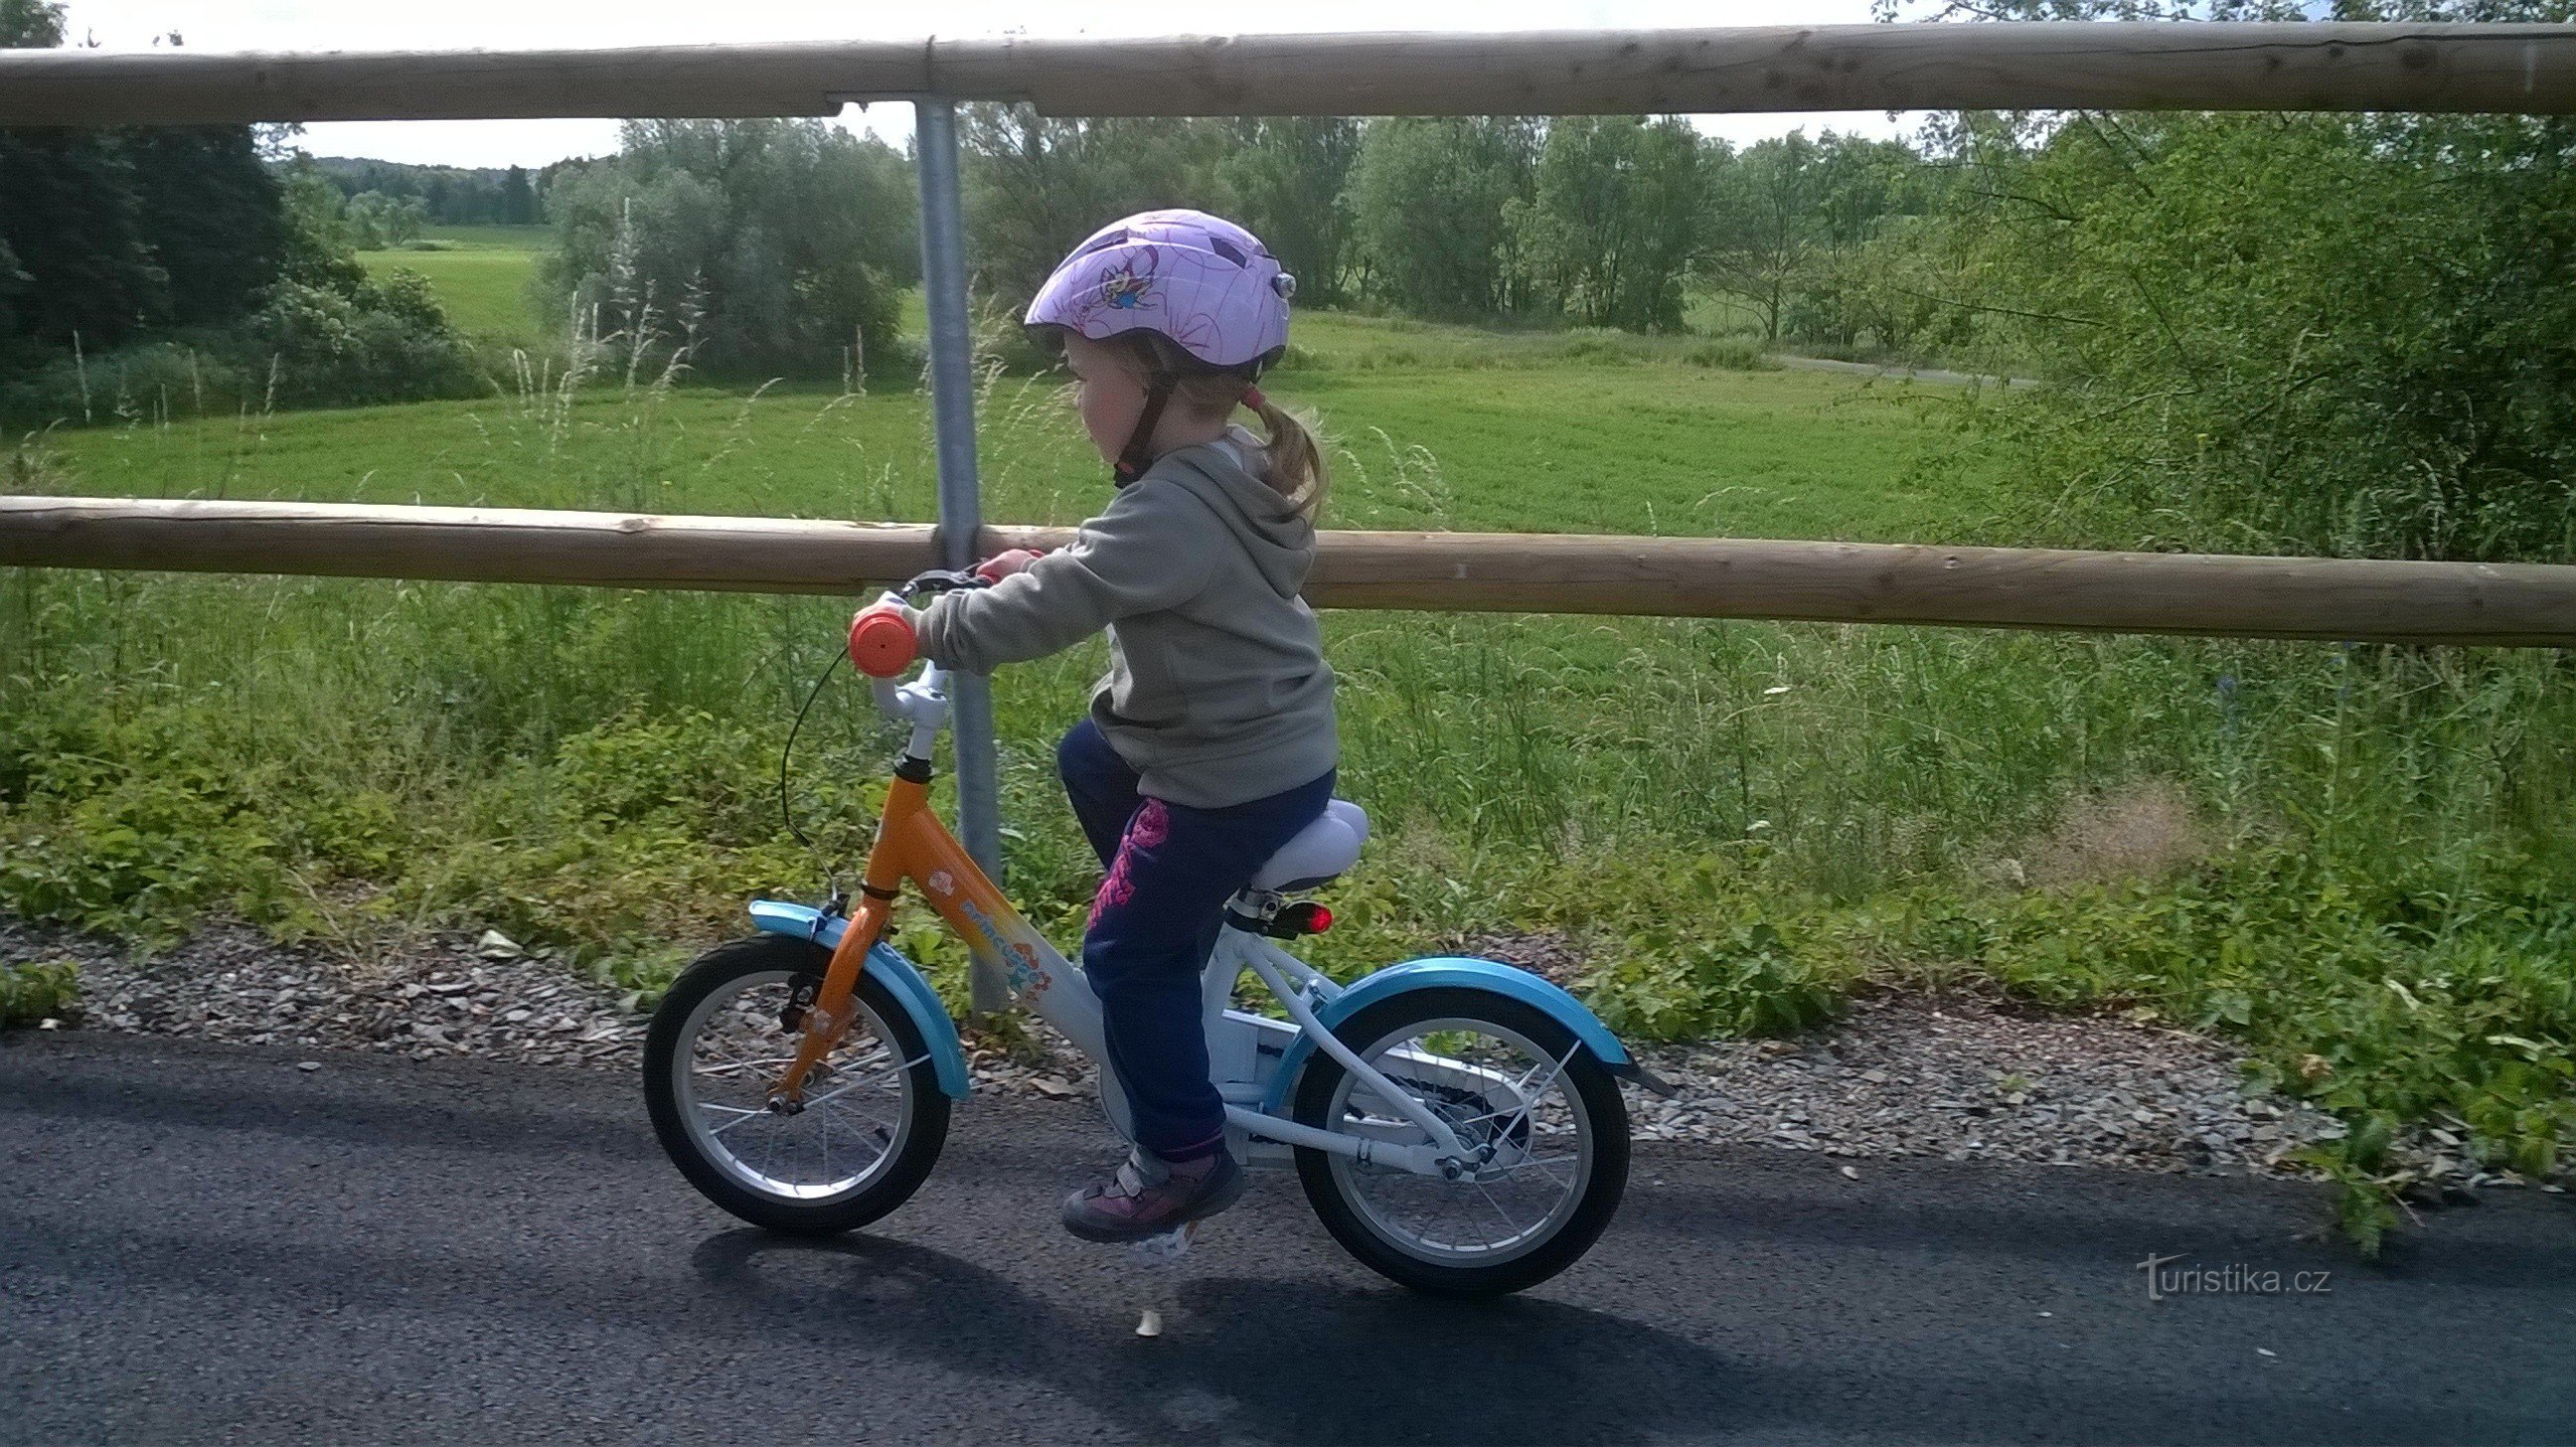 I bambini in bicicletta si divertiranno, la pista non è difficile da scalare